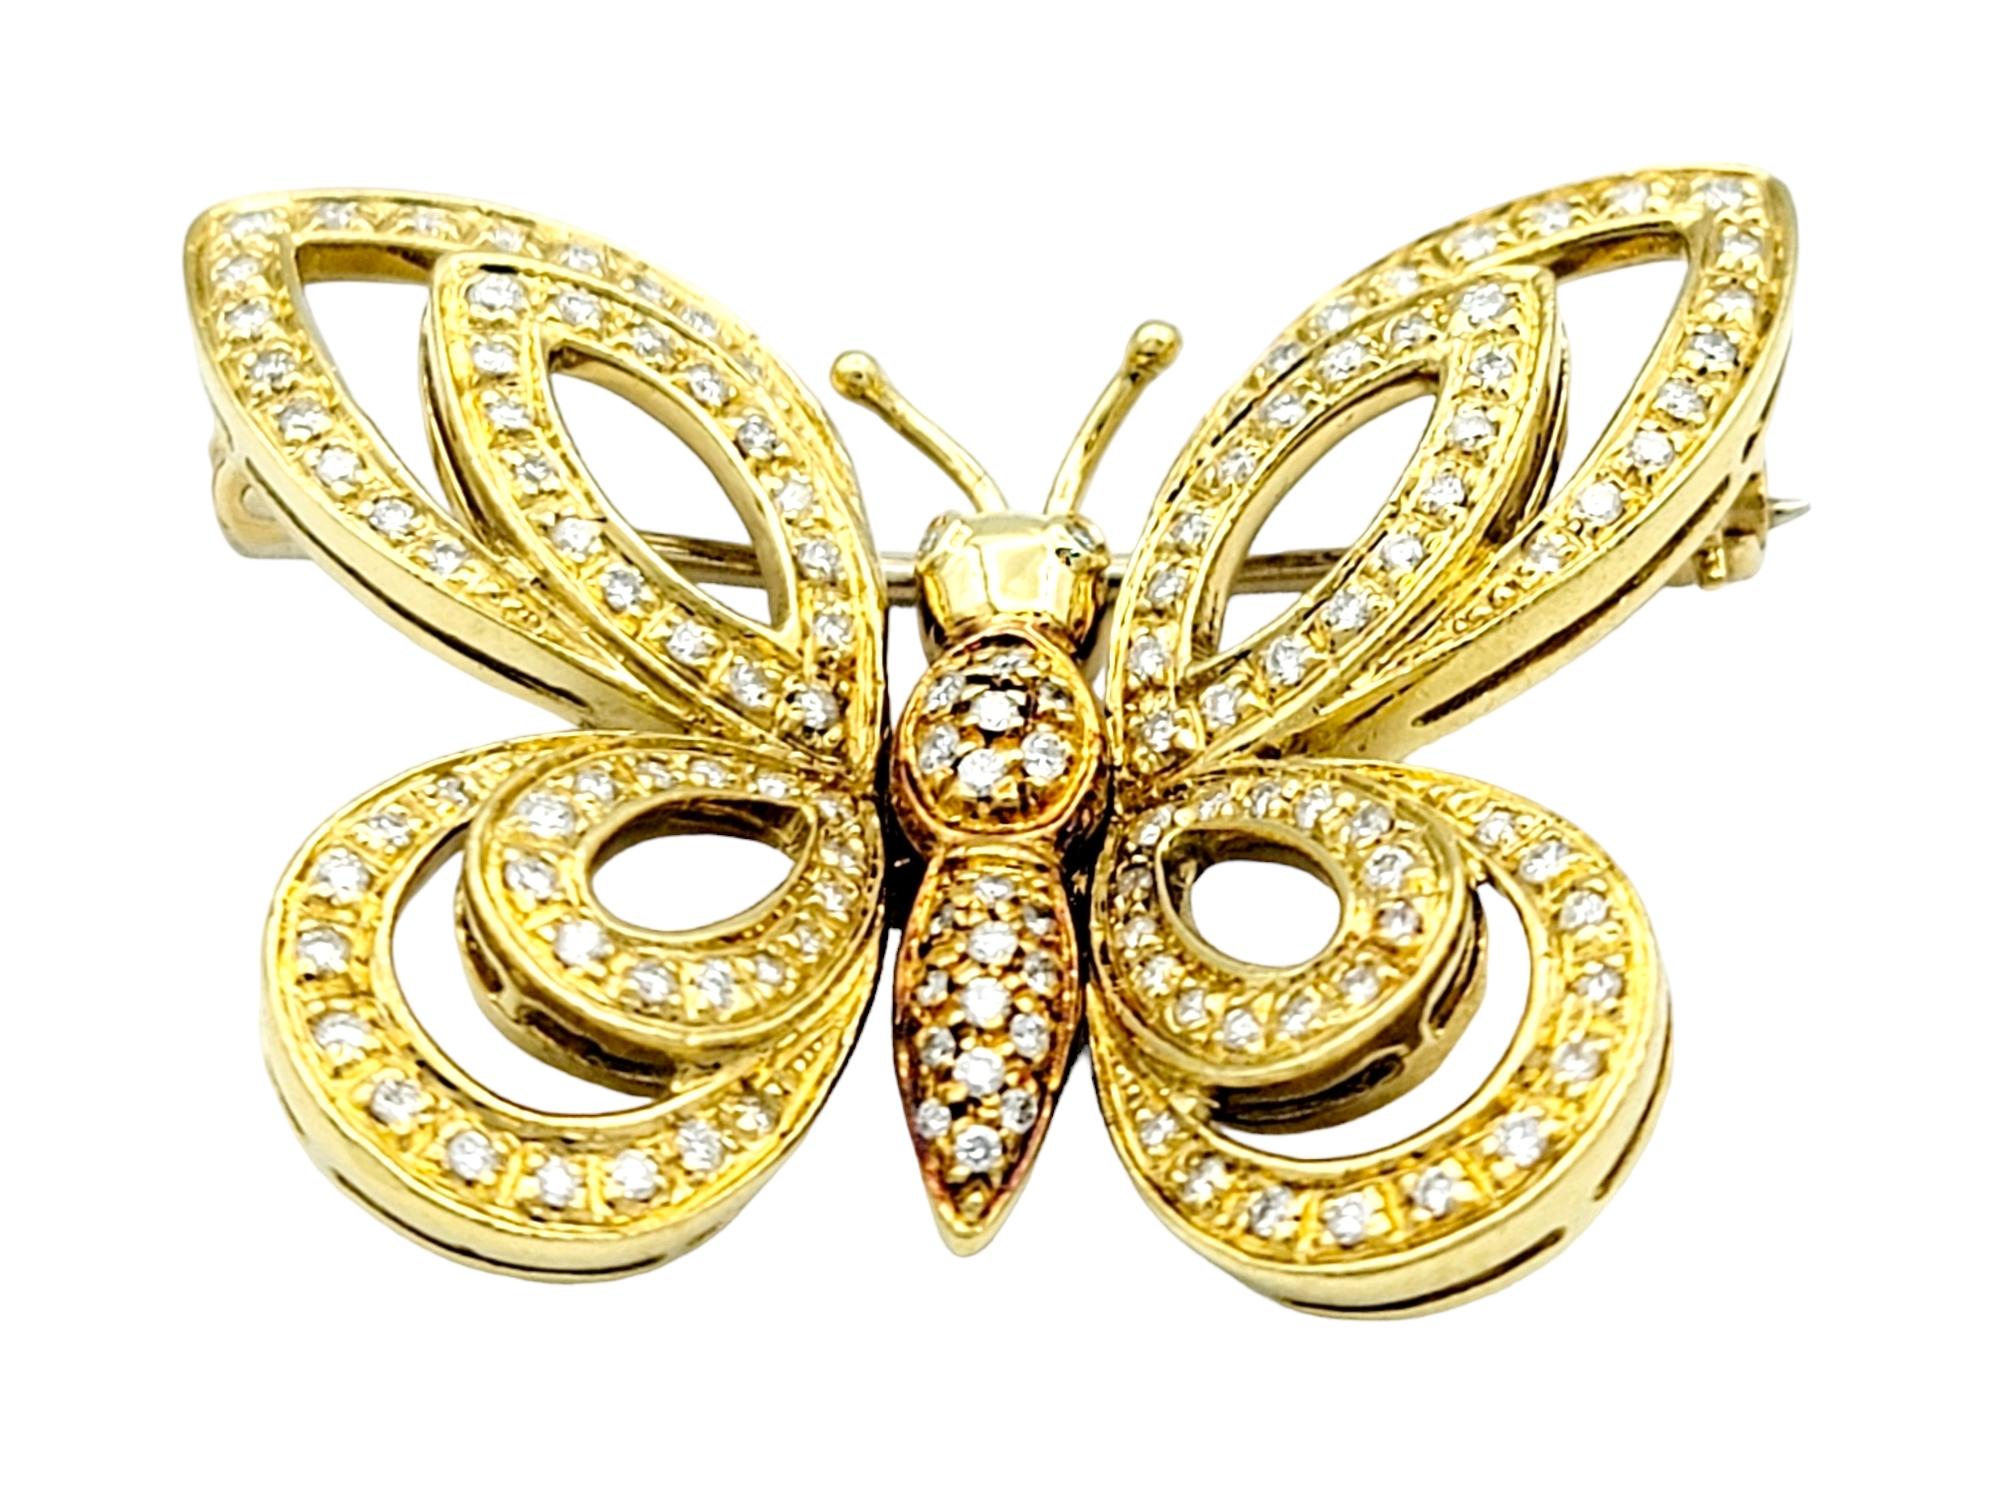 Voici une broche papillon enchanteresse en diamants, un chef-d'œuvre qui capture avec grâce la beauté délicate de la nature. Nous adorons la façon dont cette pièce exquise marie la chaleur de l'or jaune et de l'or rose, créant une symphonie